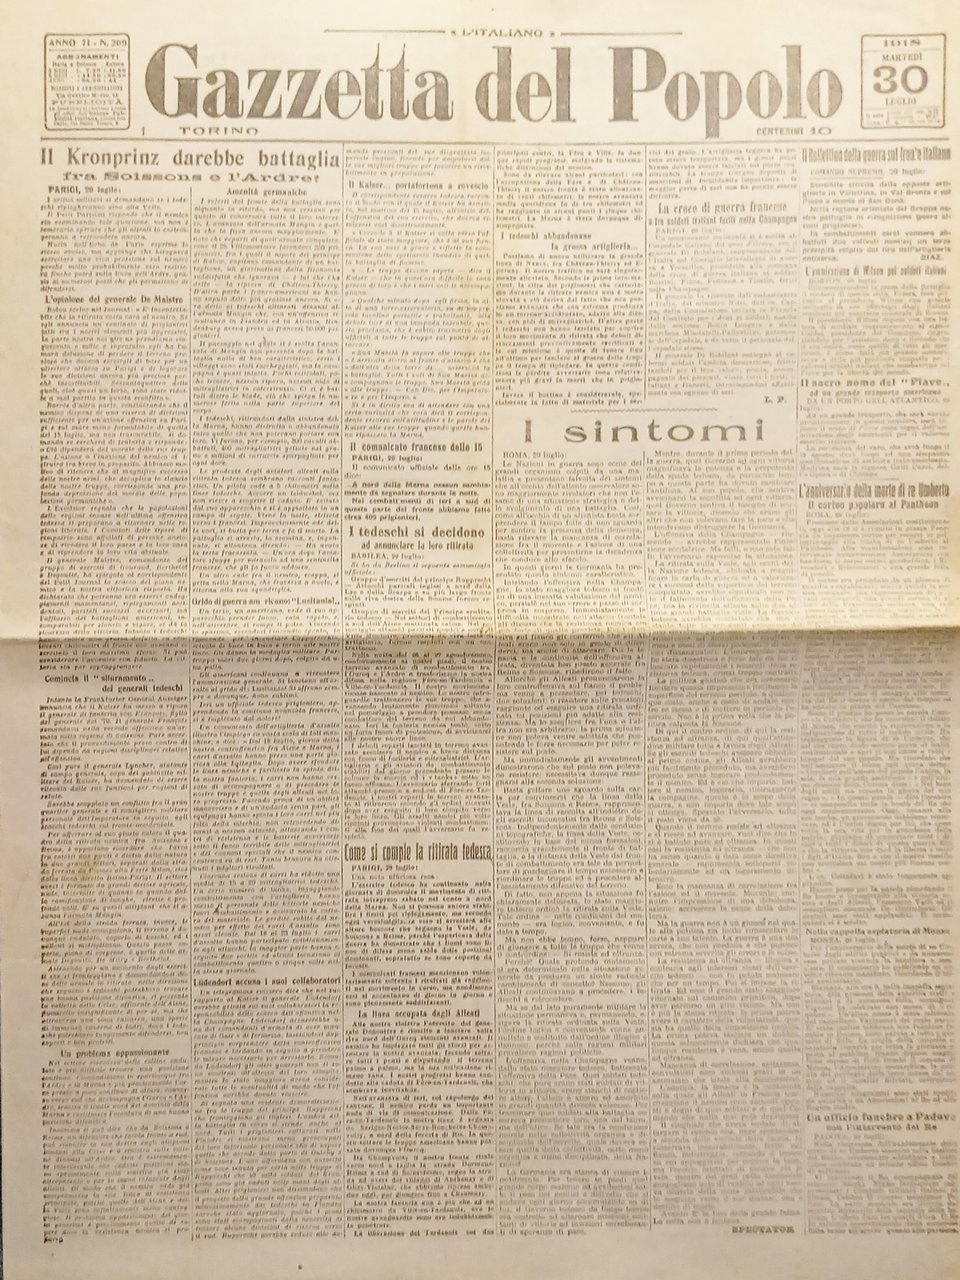 WWI Quotidiano - Gazzetta del Popolo N. 209 - 1918 …